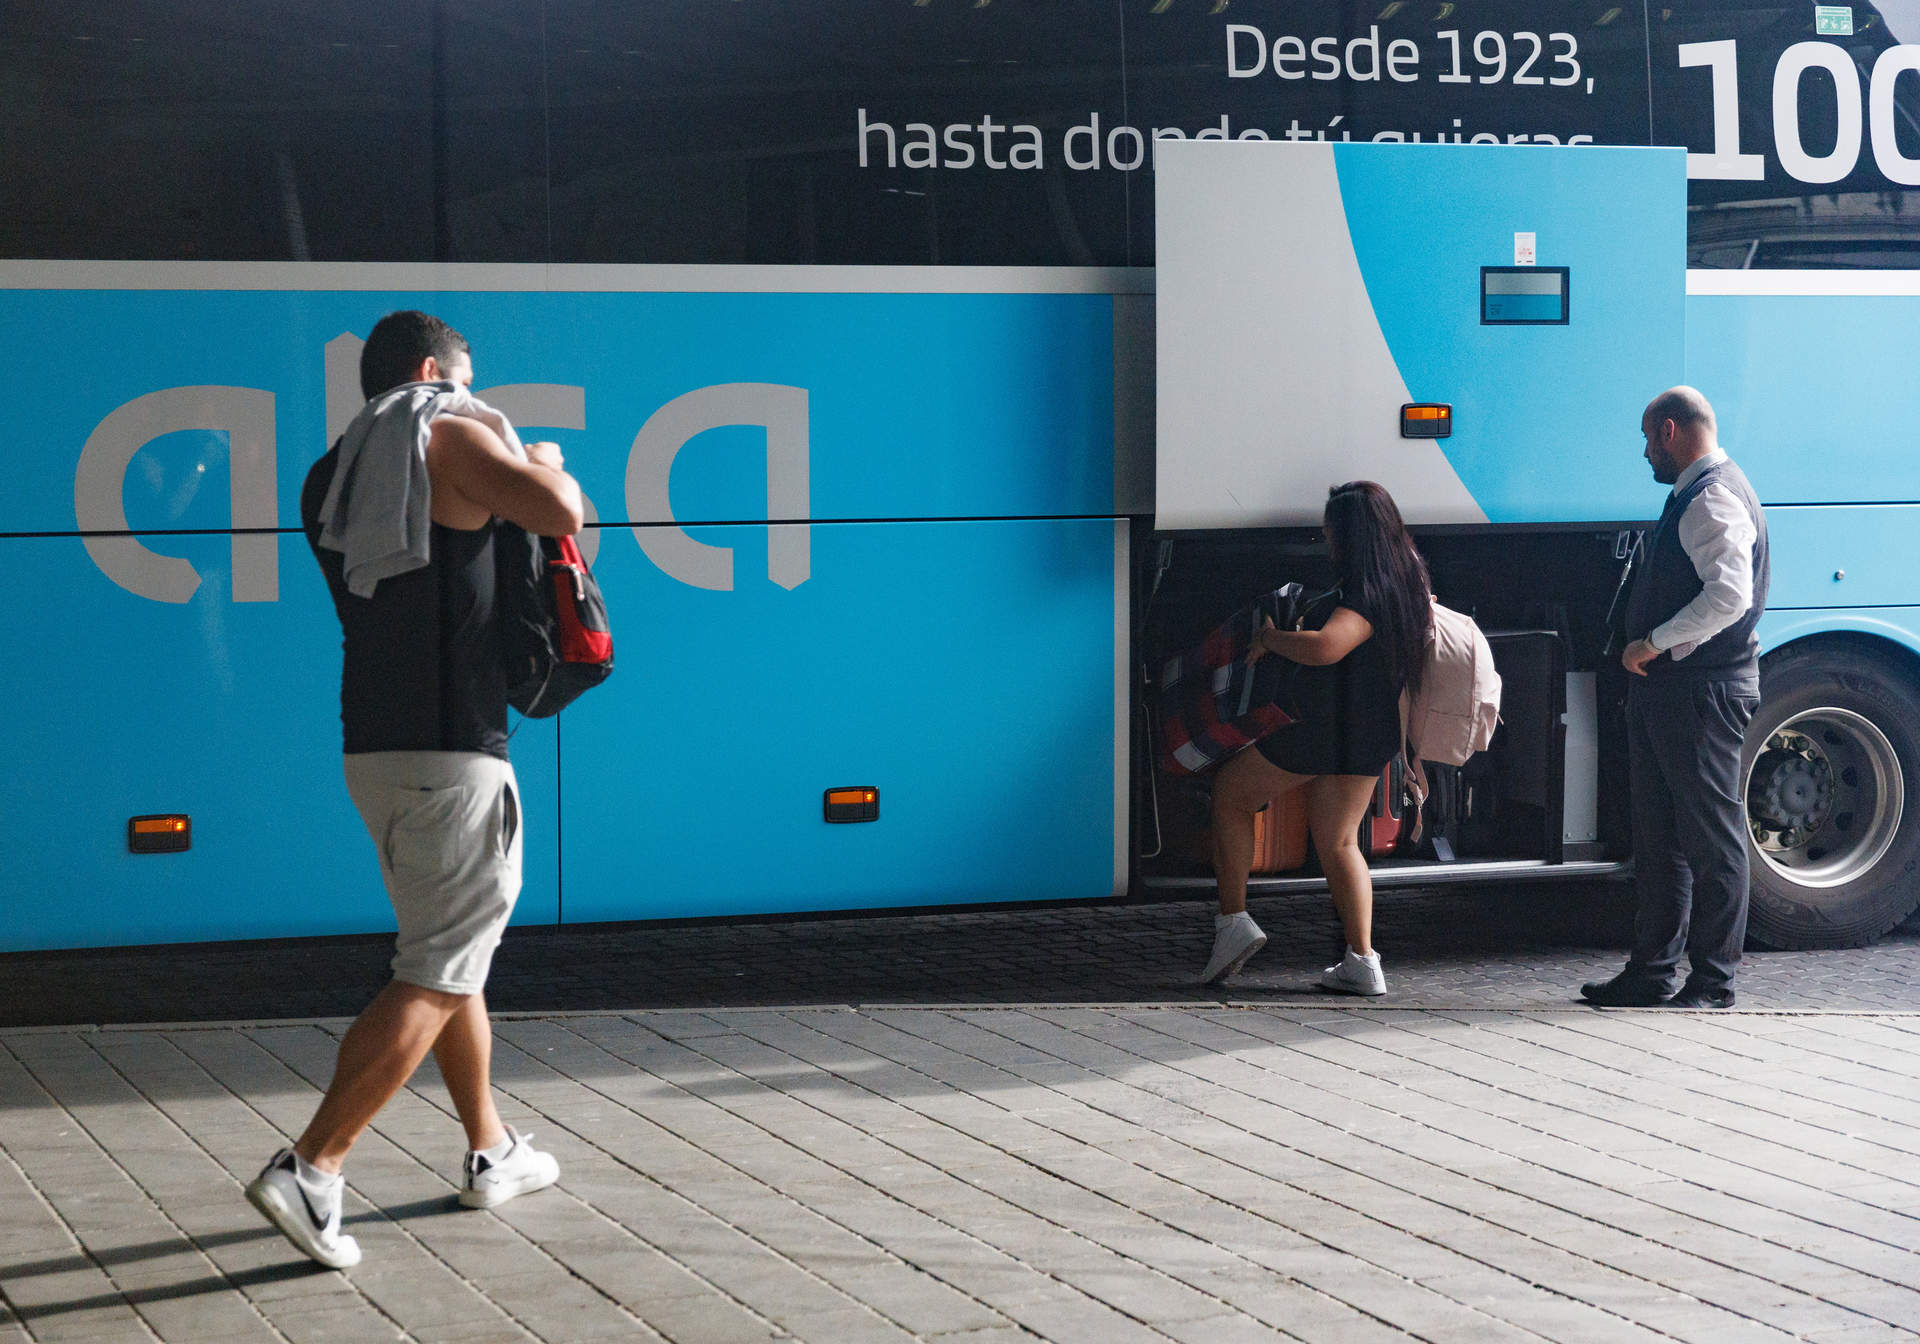 Alsa dispara un 29% su beneficio operativo en 2023 con récord de ingresos y pasajeros